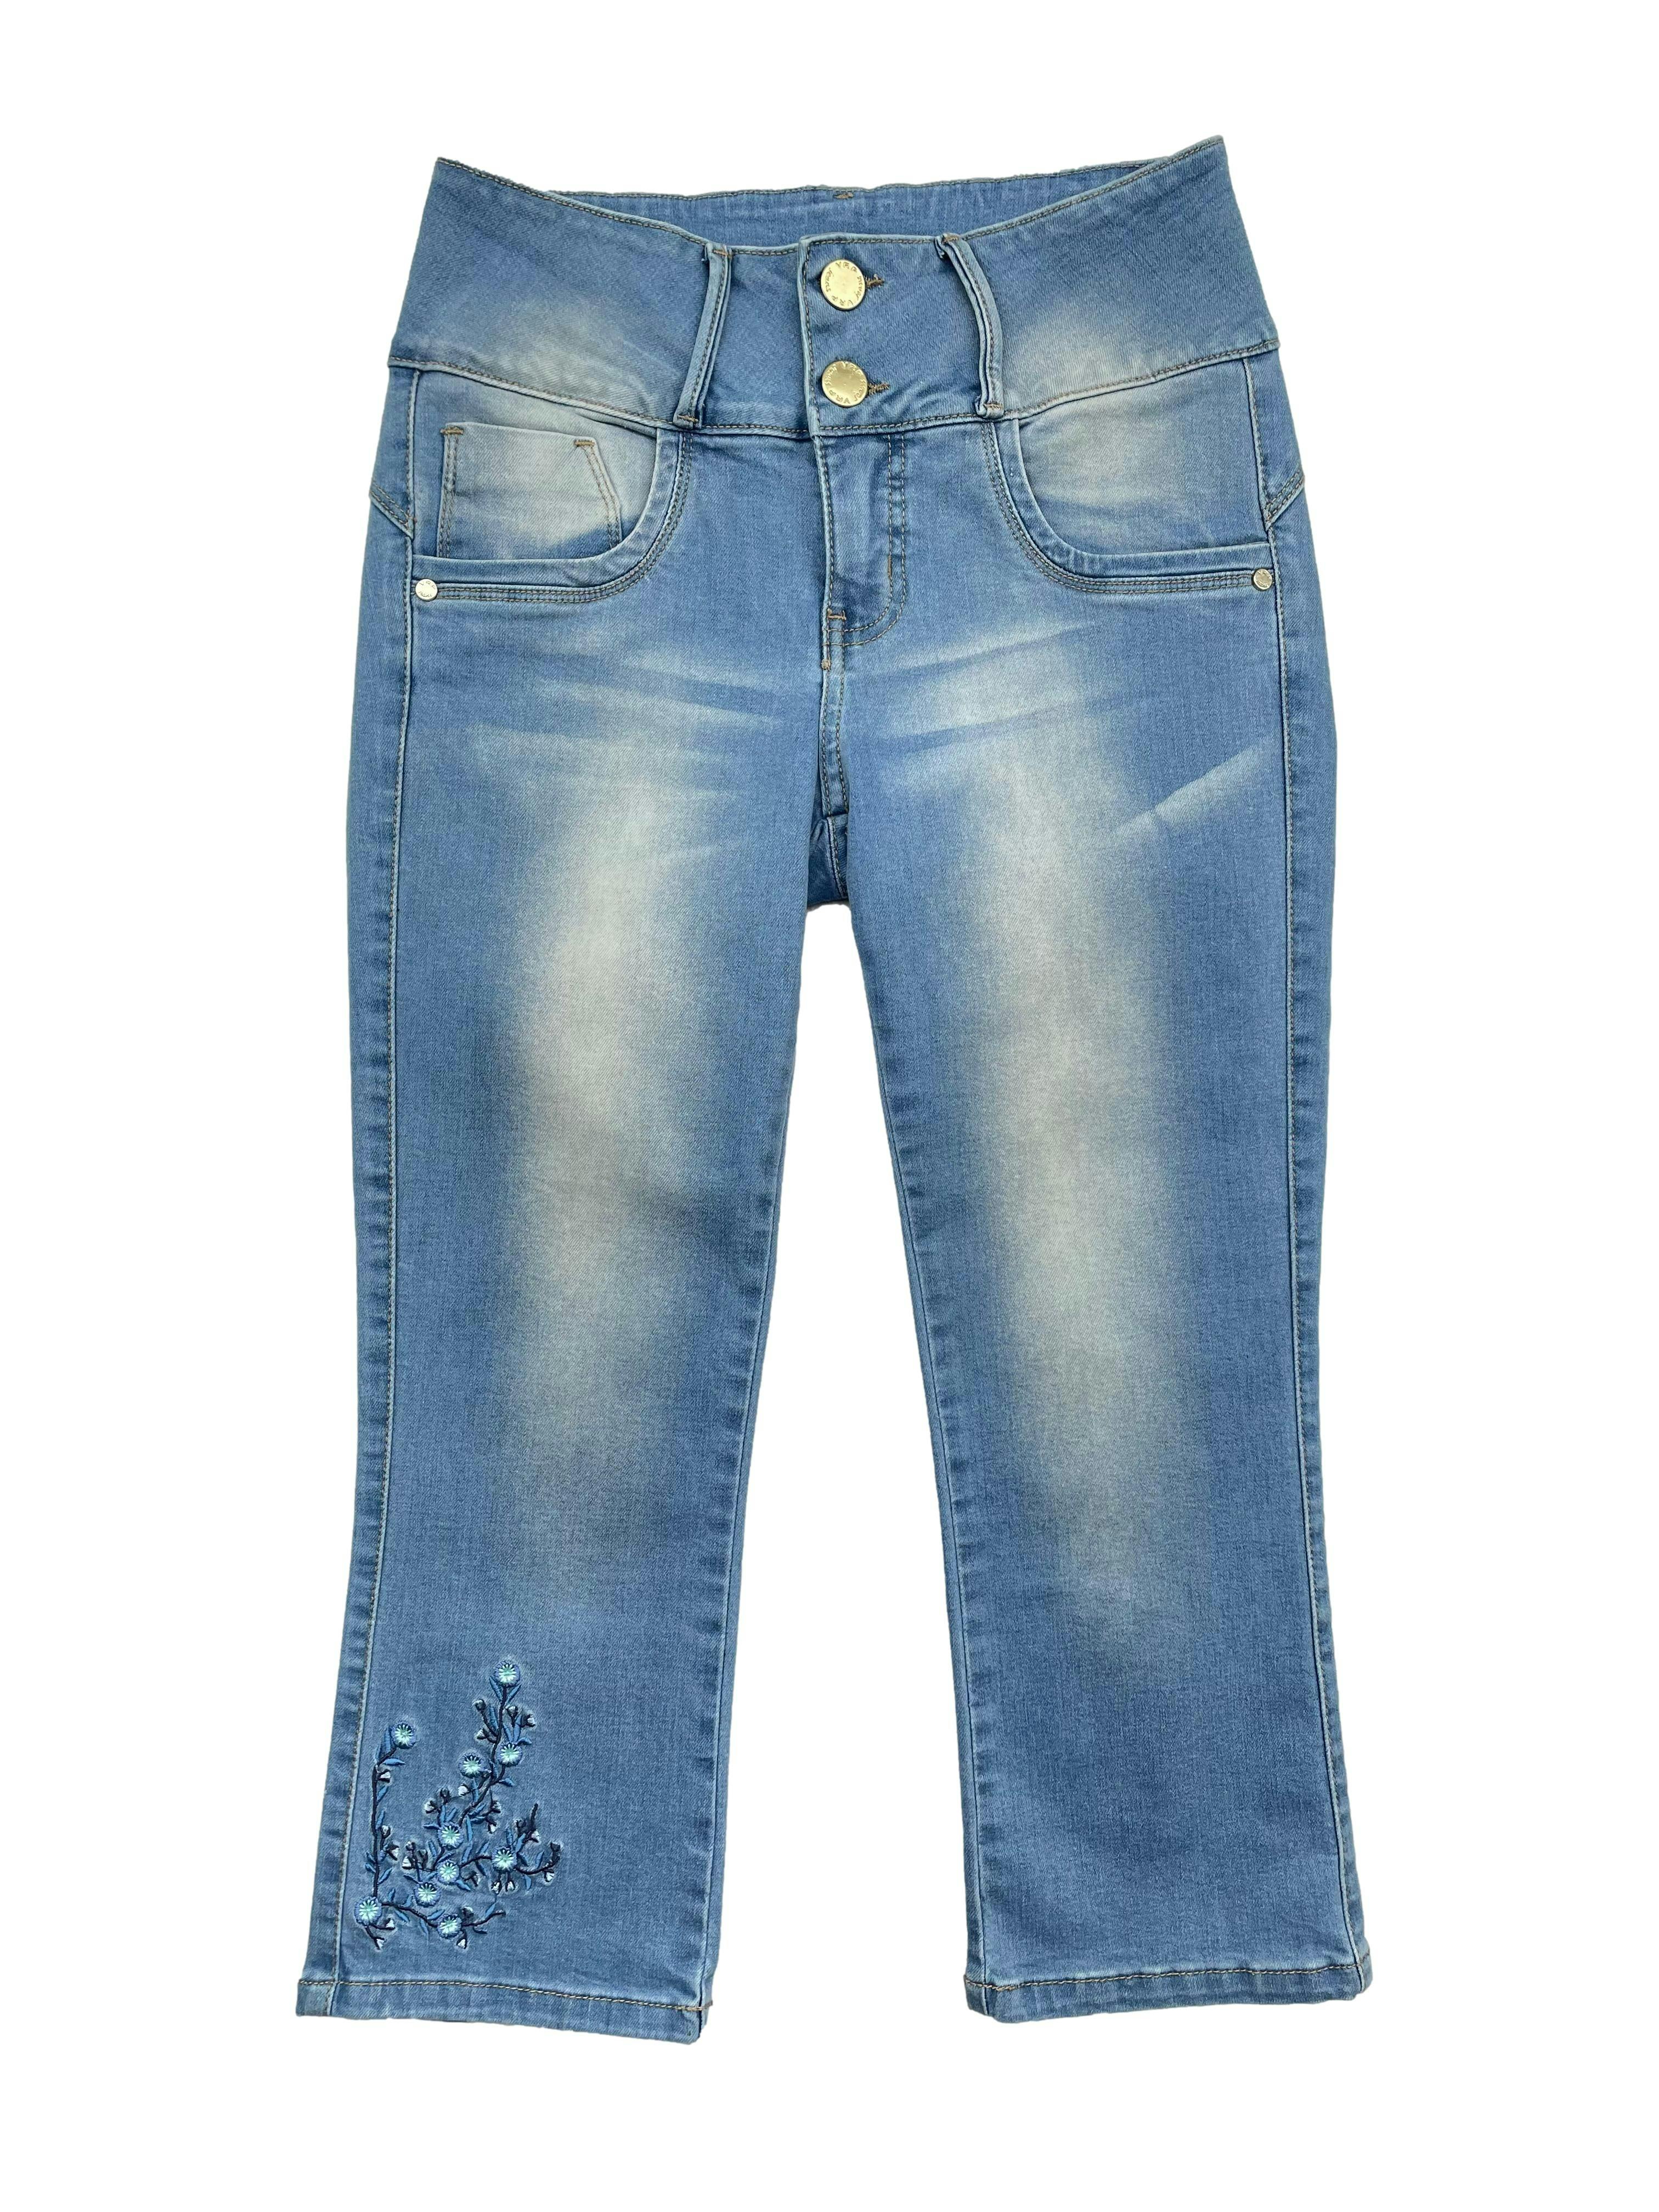 Jeans capri efecto lavado, tela stretch, pretina ancha, bolsillos, pinzas posteriores y bordado floral. Cintura 64cm sin estirar, Largo 75cm.